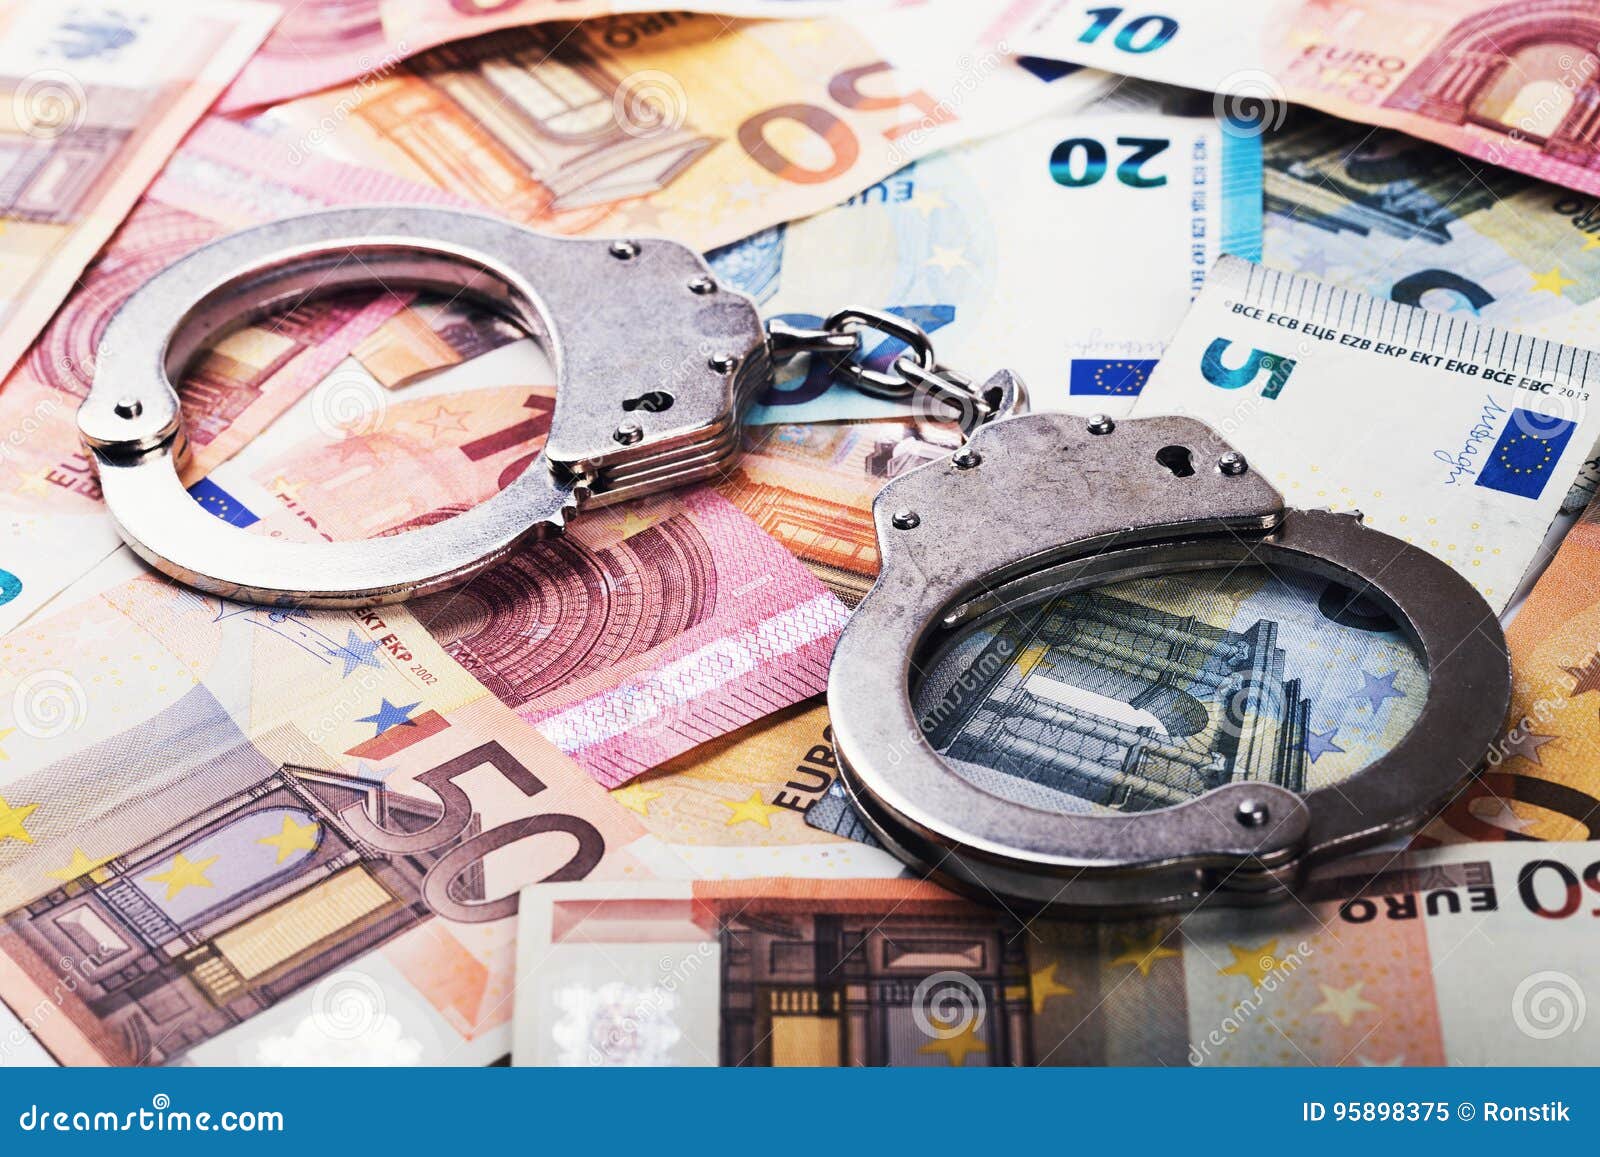 tax evasion, corruption concept - handcuffs on euro money bills